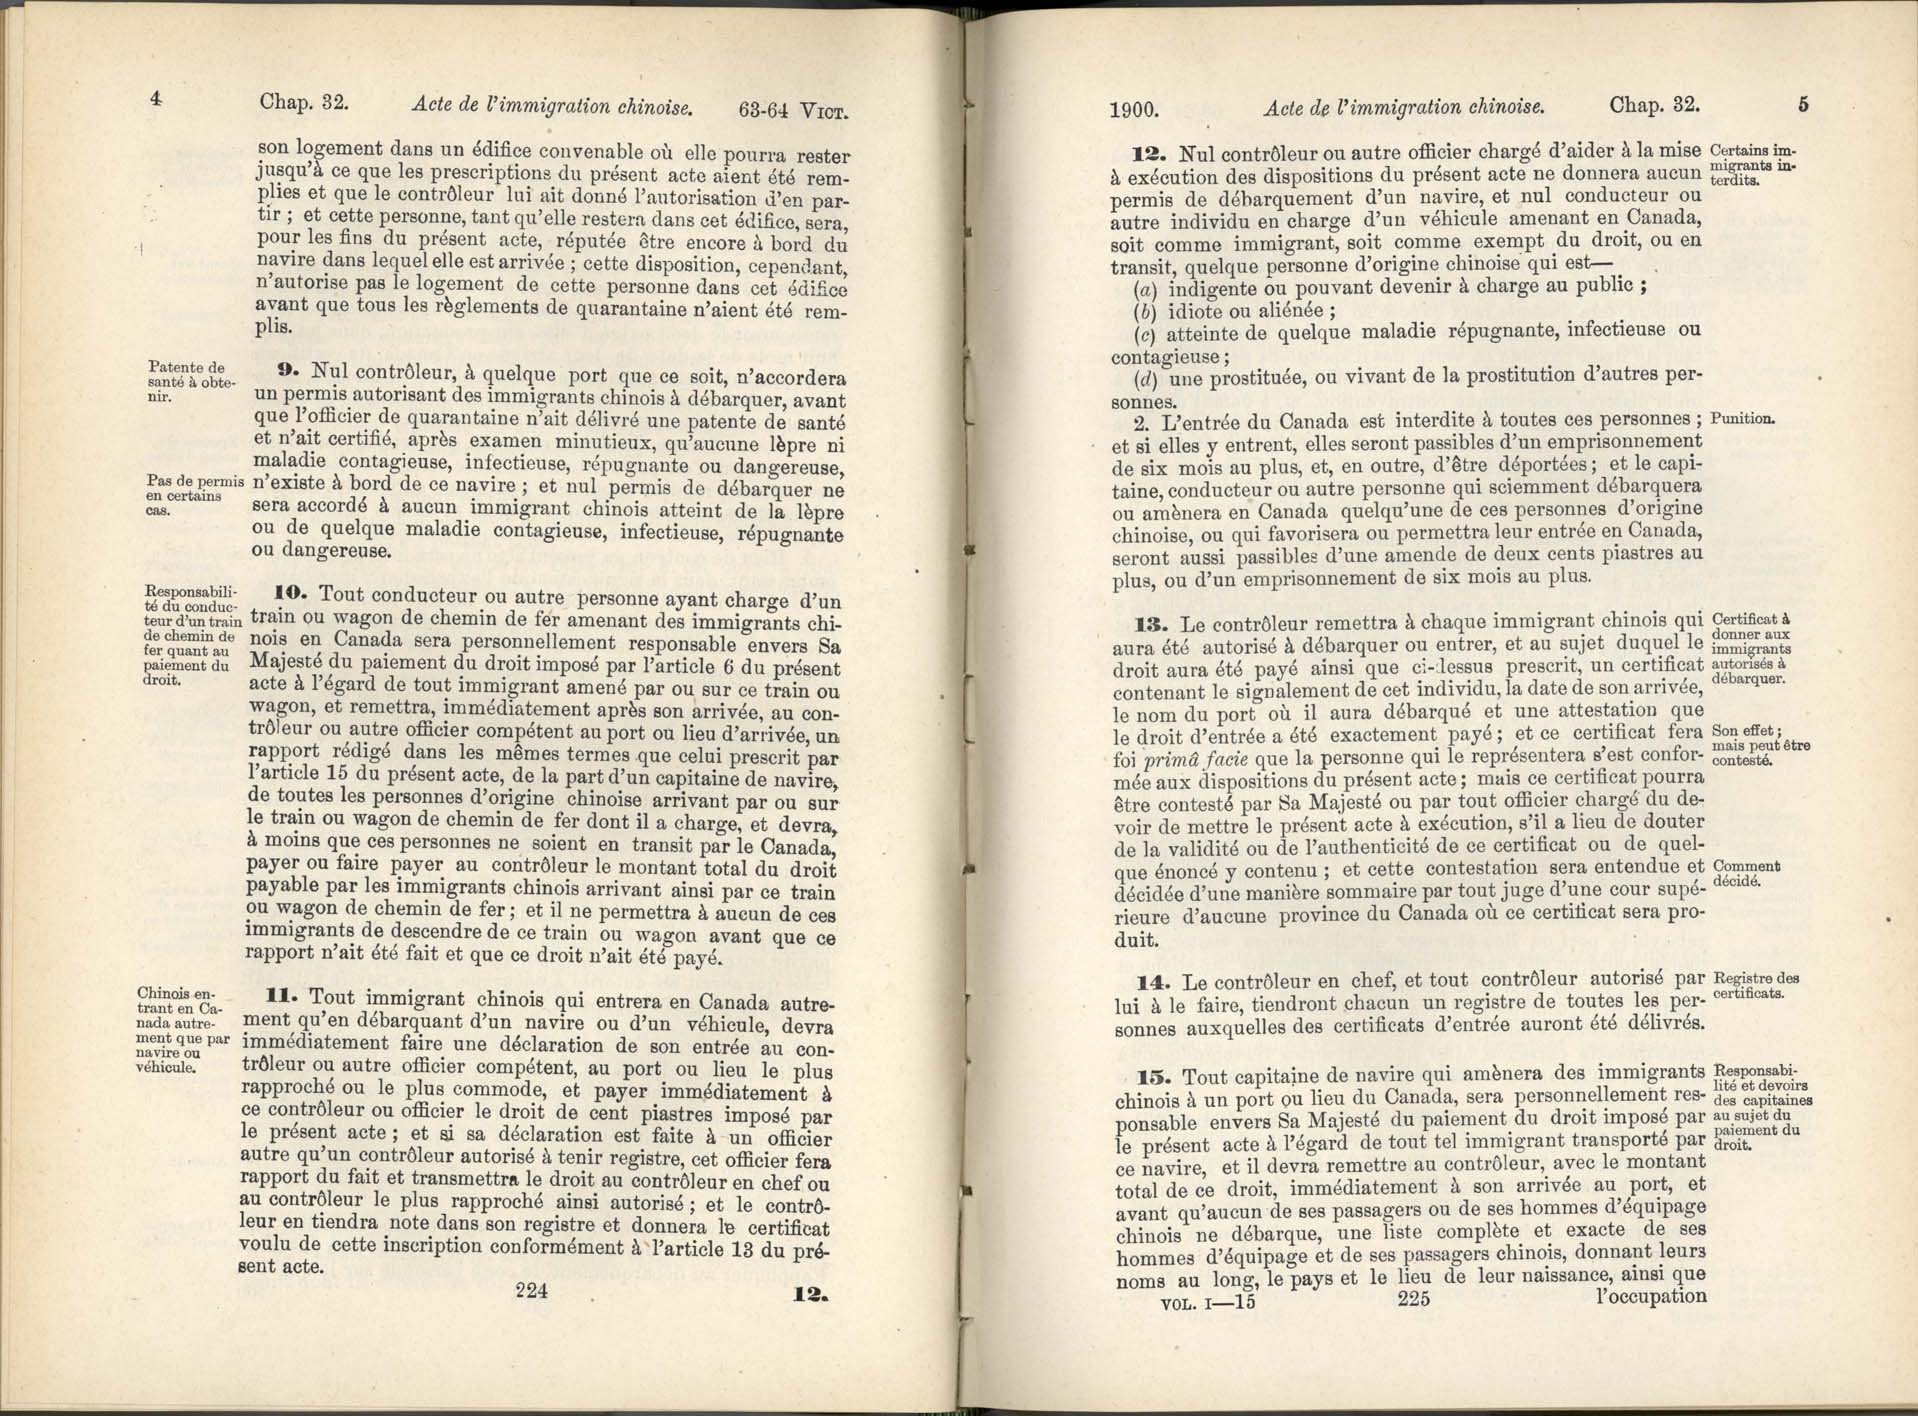 Chap. 35 Page 224, 225 Acte de l’immigration chinoise, 1885 Amendement 1900